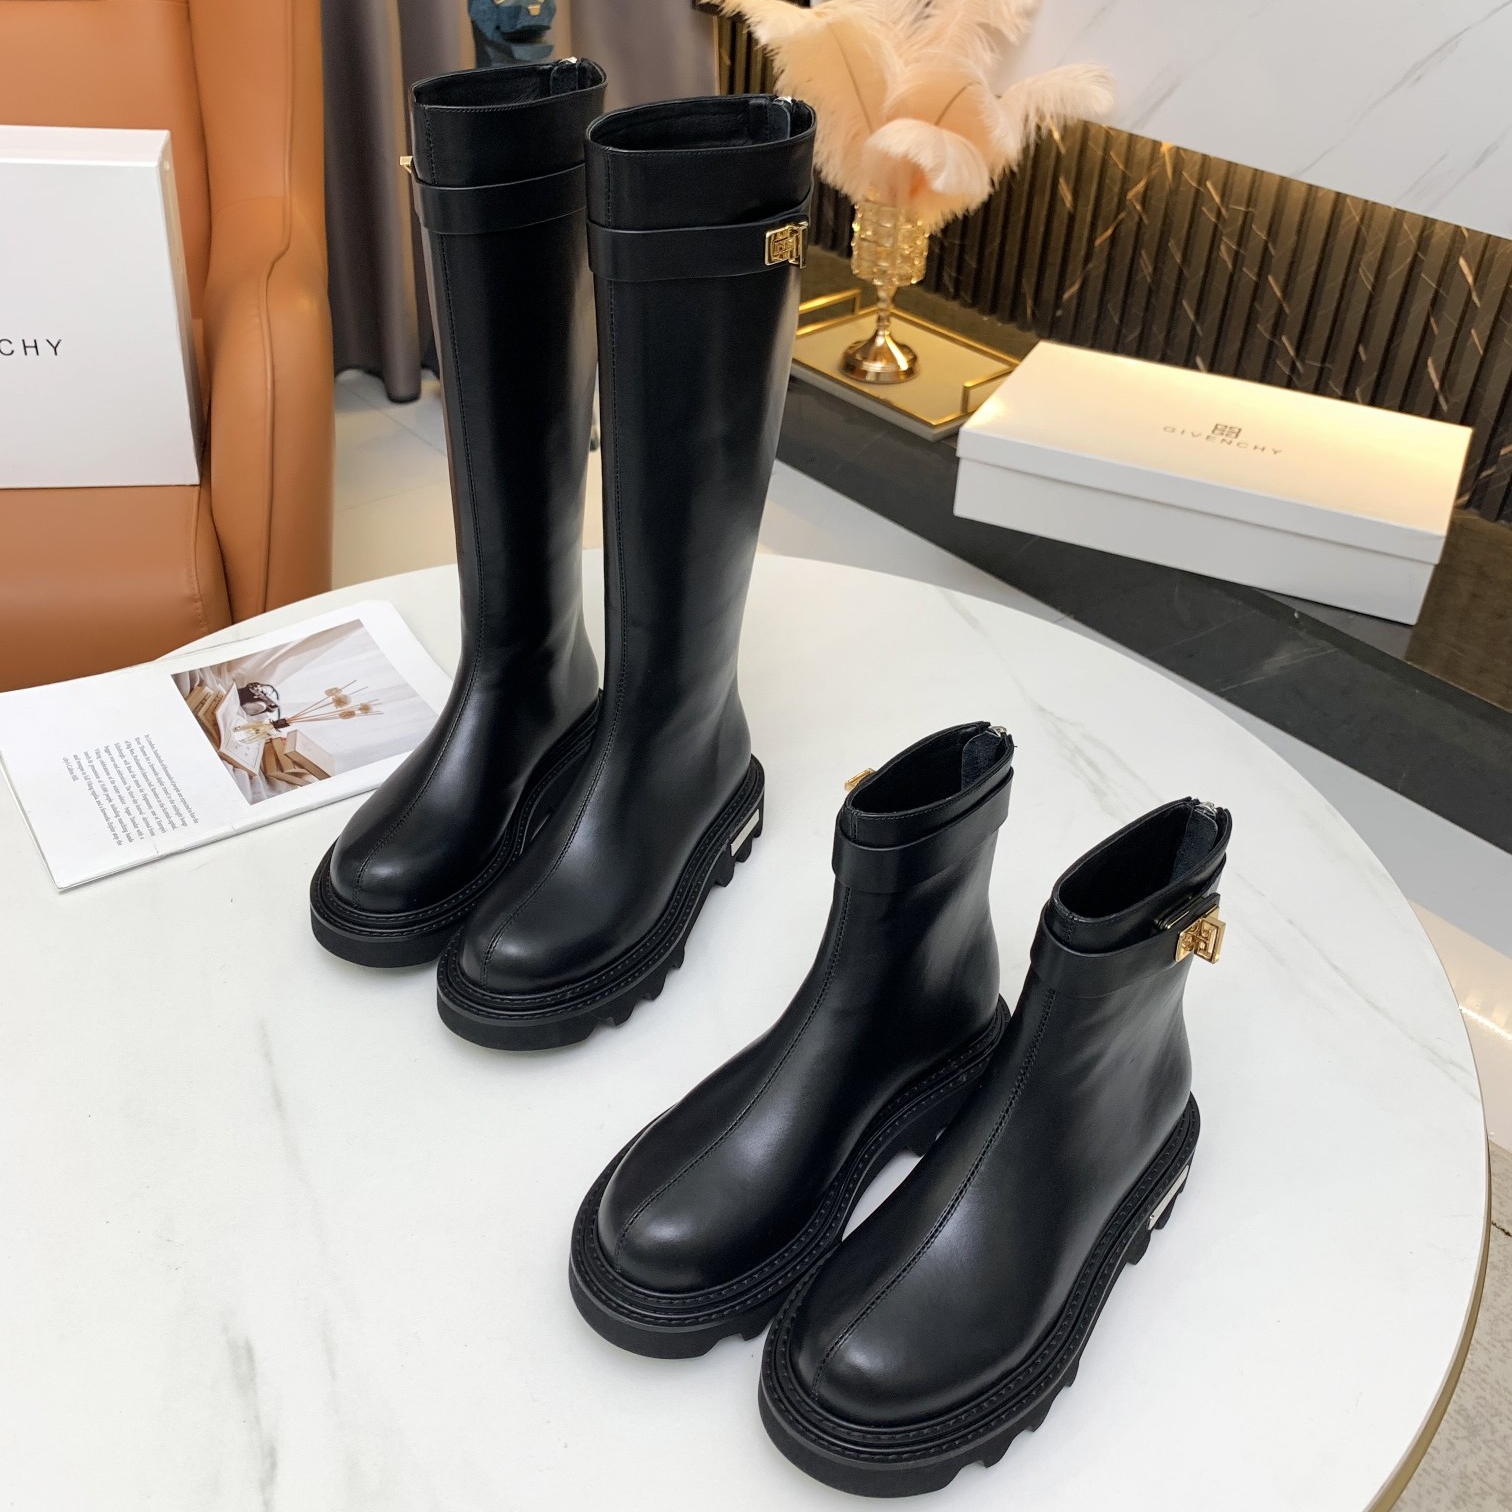 Καλές πωλήσεις GivenChy μόδας πολυτελείας διάσημη μάρκα Milan Fashion Week γυναικεία επώνυμα παπούτσια και ψεύτικα παπούτσια σχεδιαστών επίσης επώνυμα τακούνια